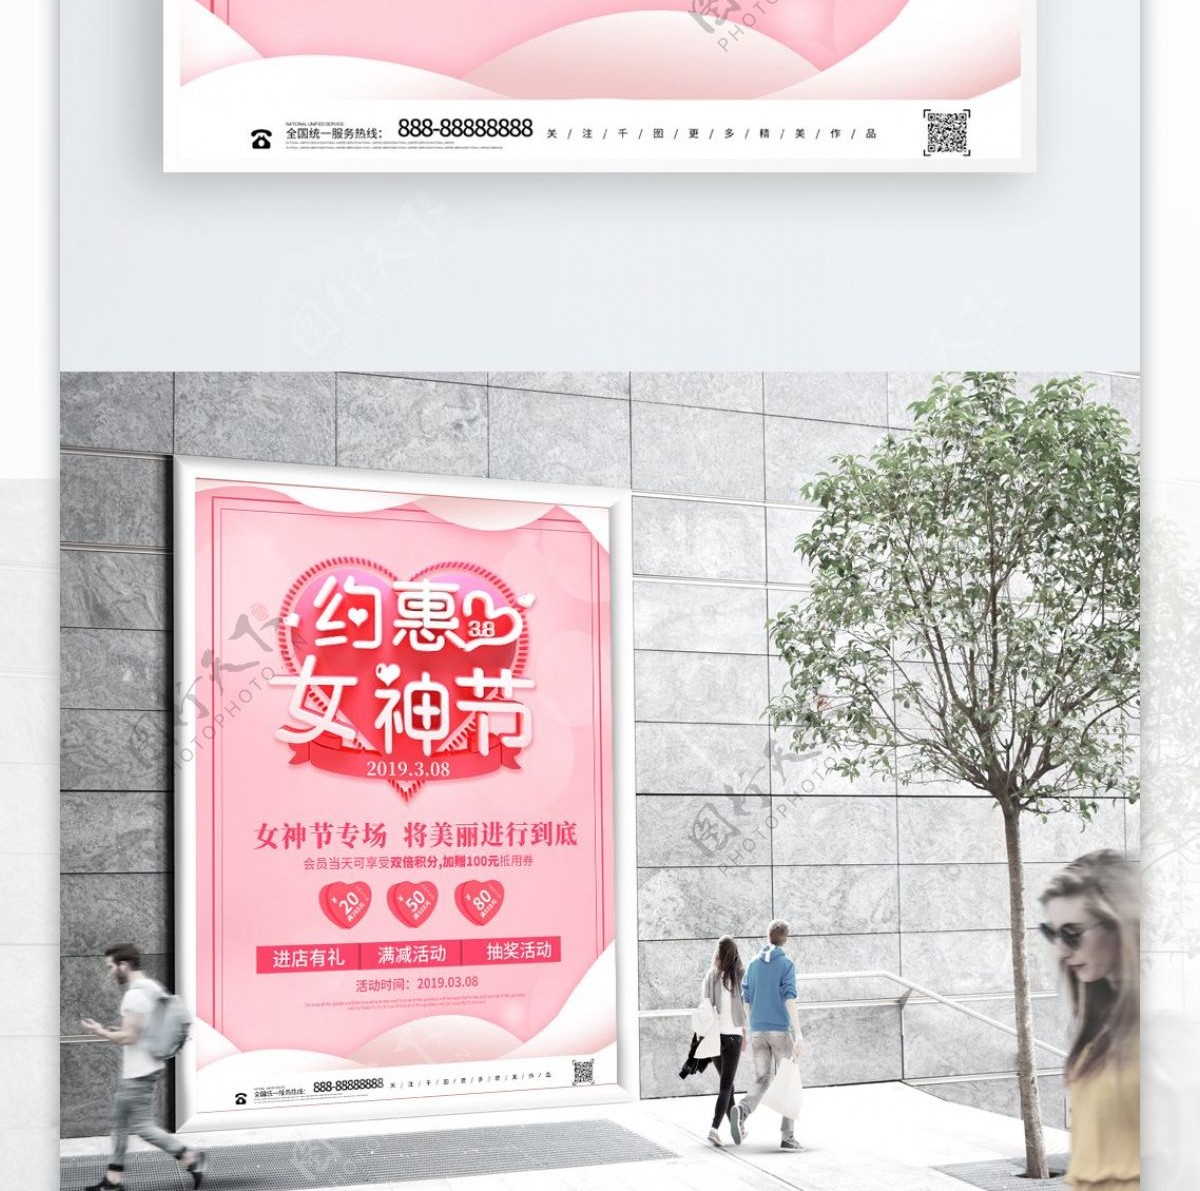 粉色立体创意38女神节浪漫海报设计